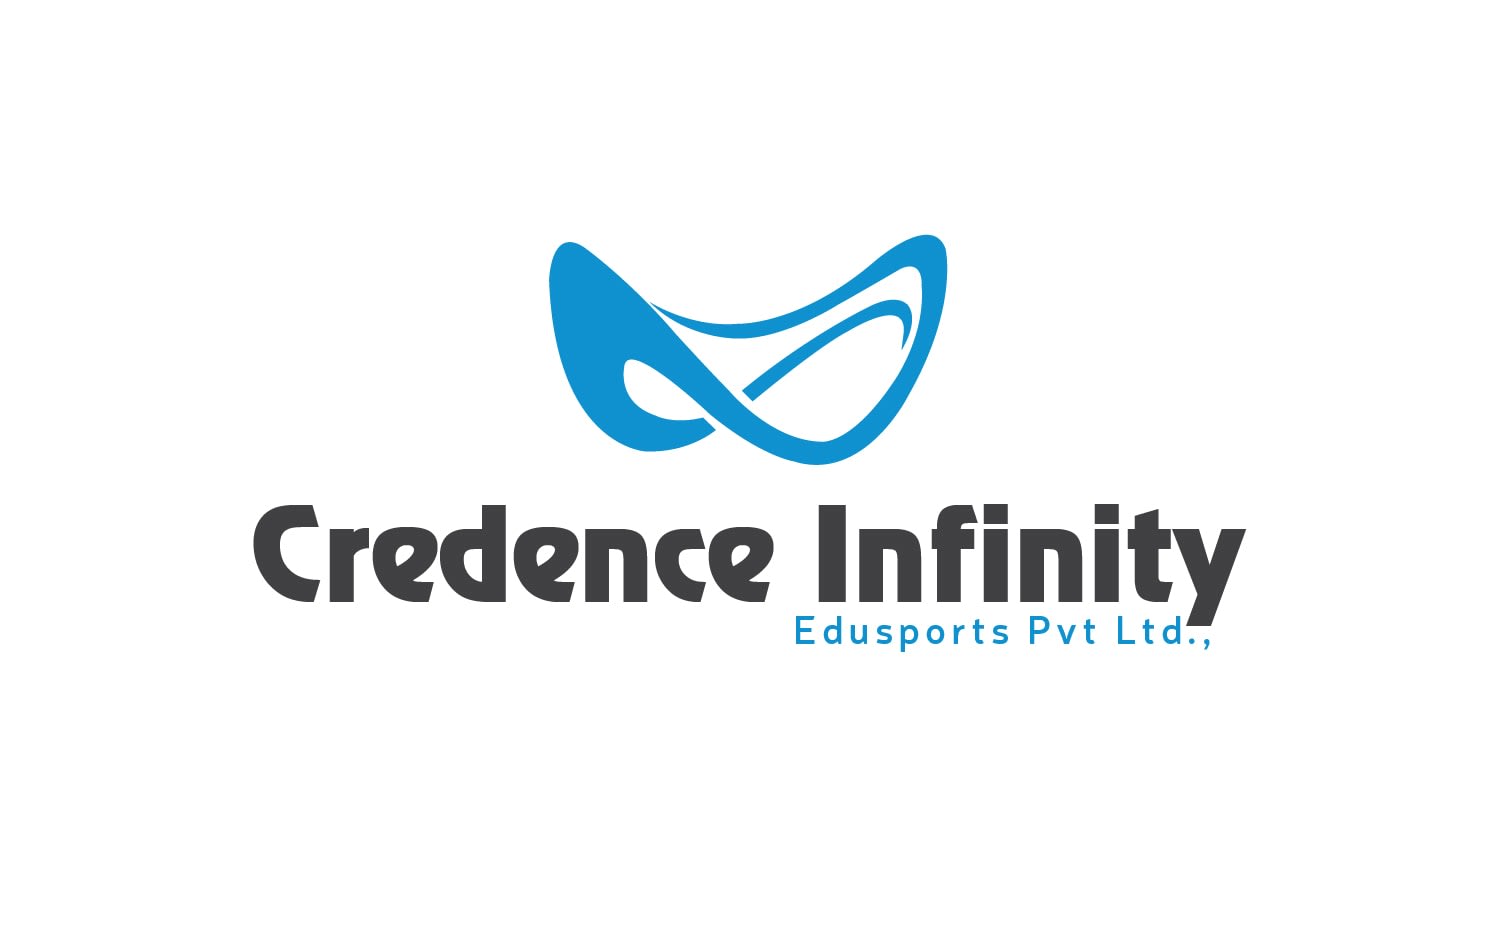 Credence Infinity Edusports